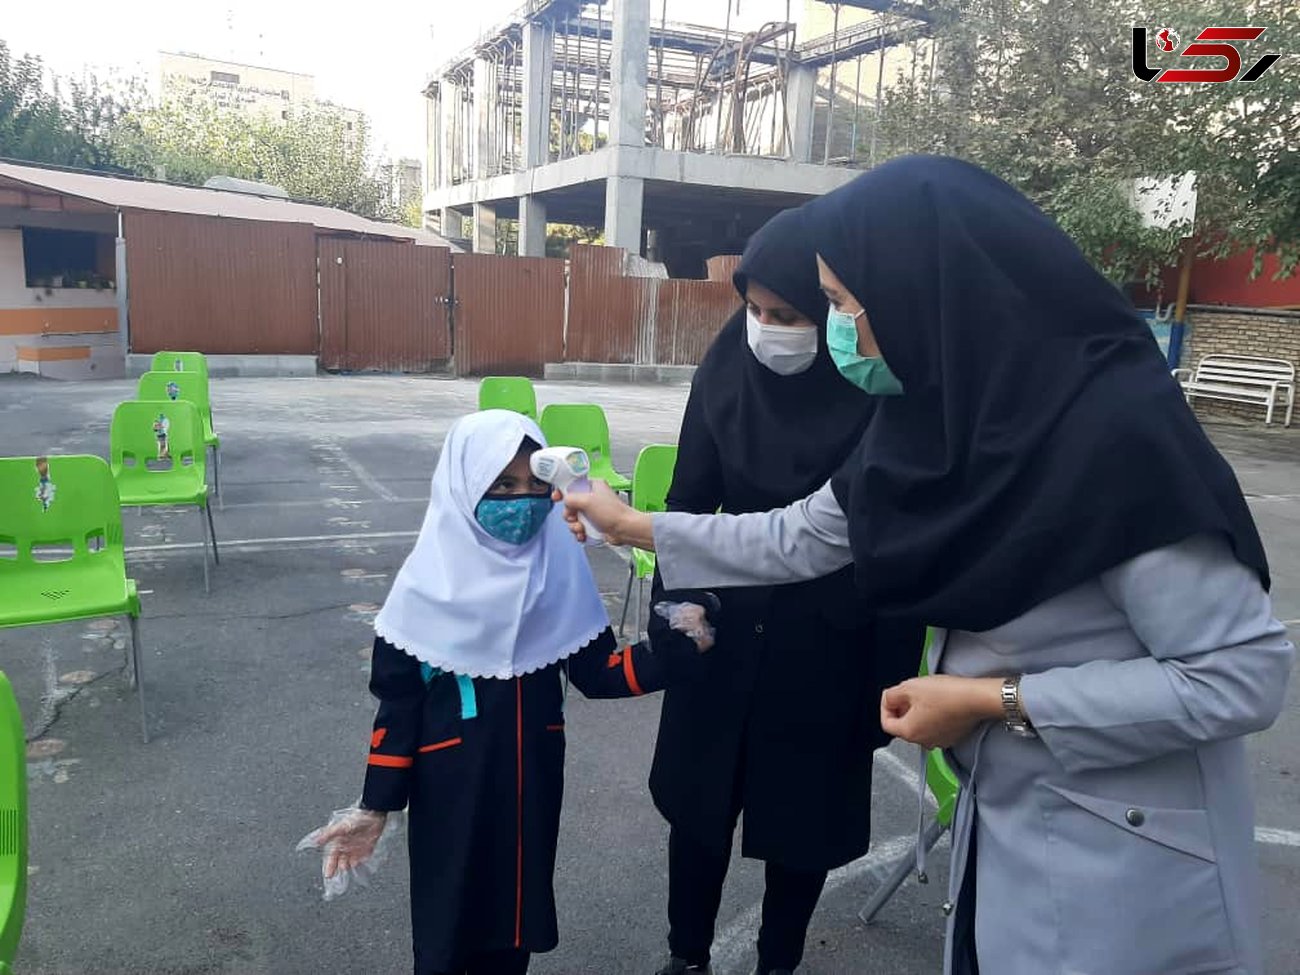 ورود کرونا به مدرسه دخترانه شاهد در تهران / دو معلم و چند دانش آموز مبتلا شدند!/ واکنش مدیر مدرسه